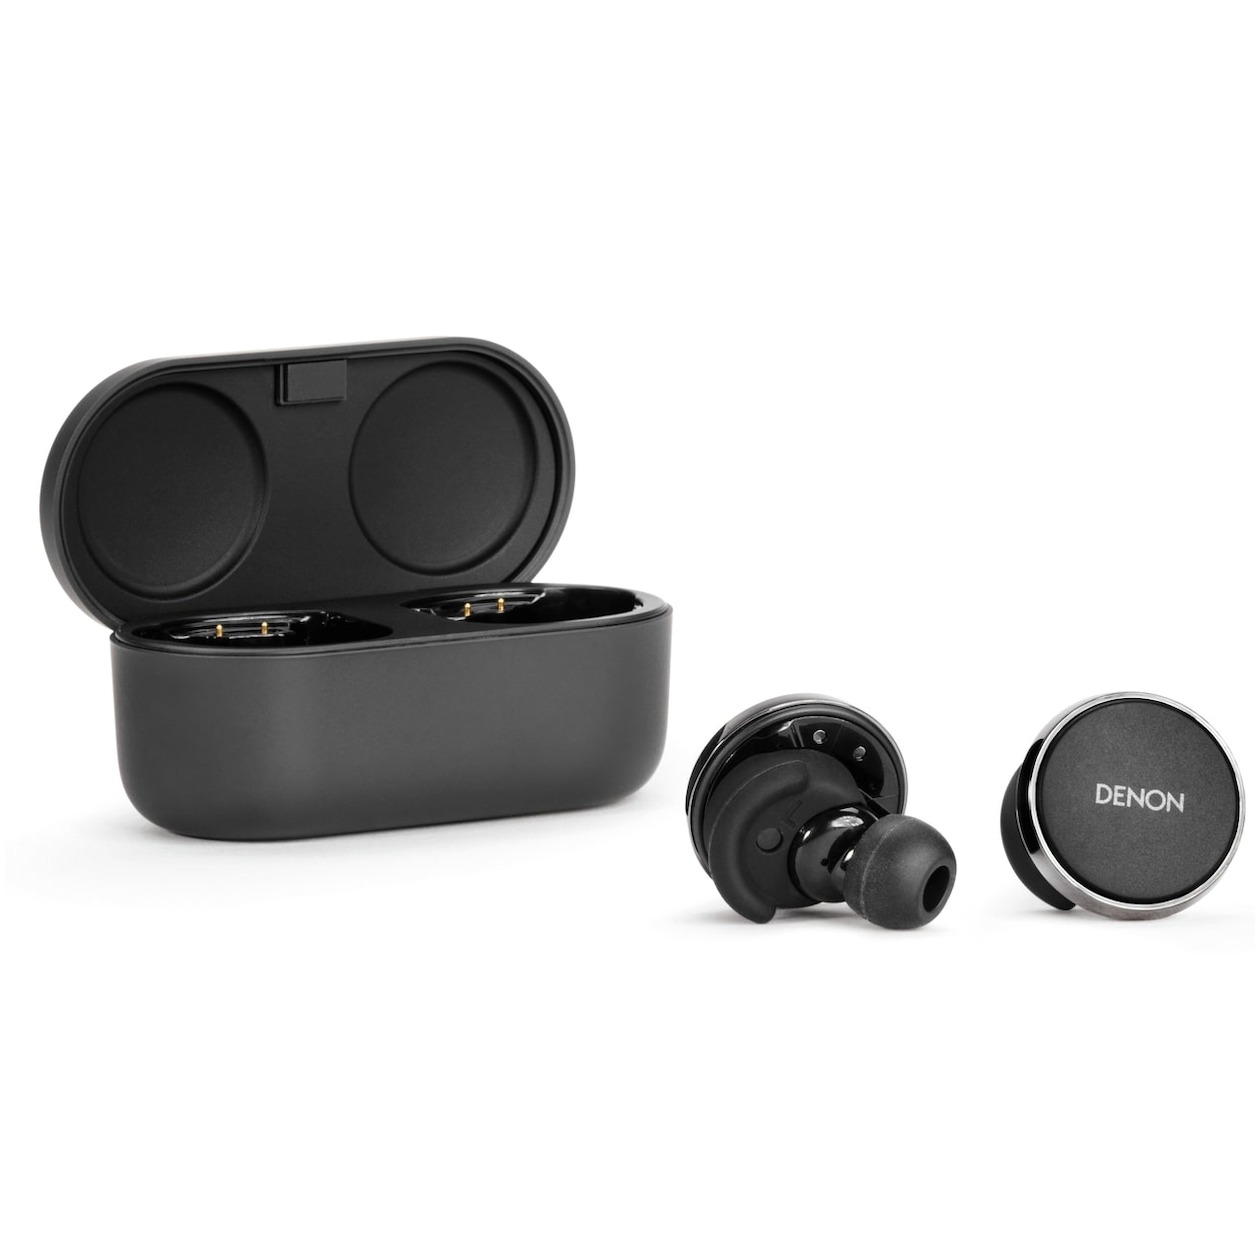 Denon PerL Pro In-Ear Headphones - Draadloze oordopjes met gepersonaliseerd klankprofiel - Waterbestendig - 8 + 32 uur batterijduur